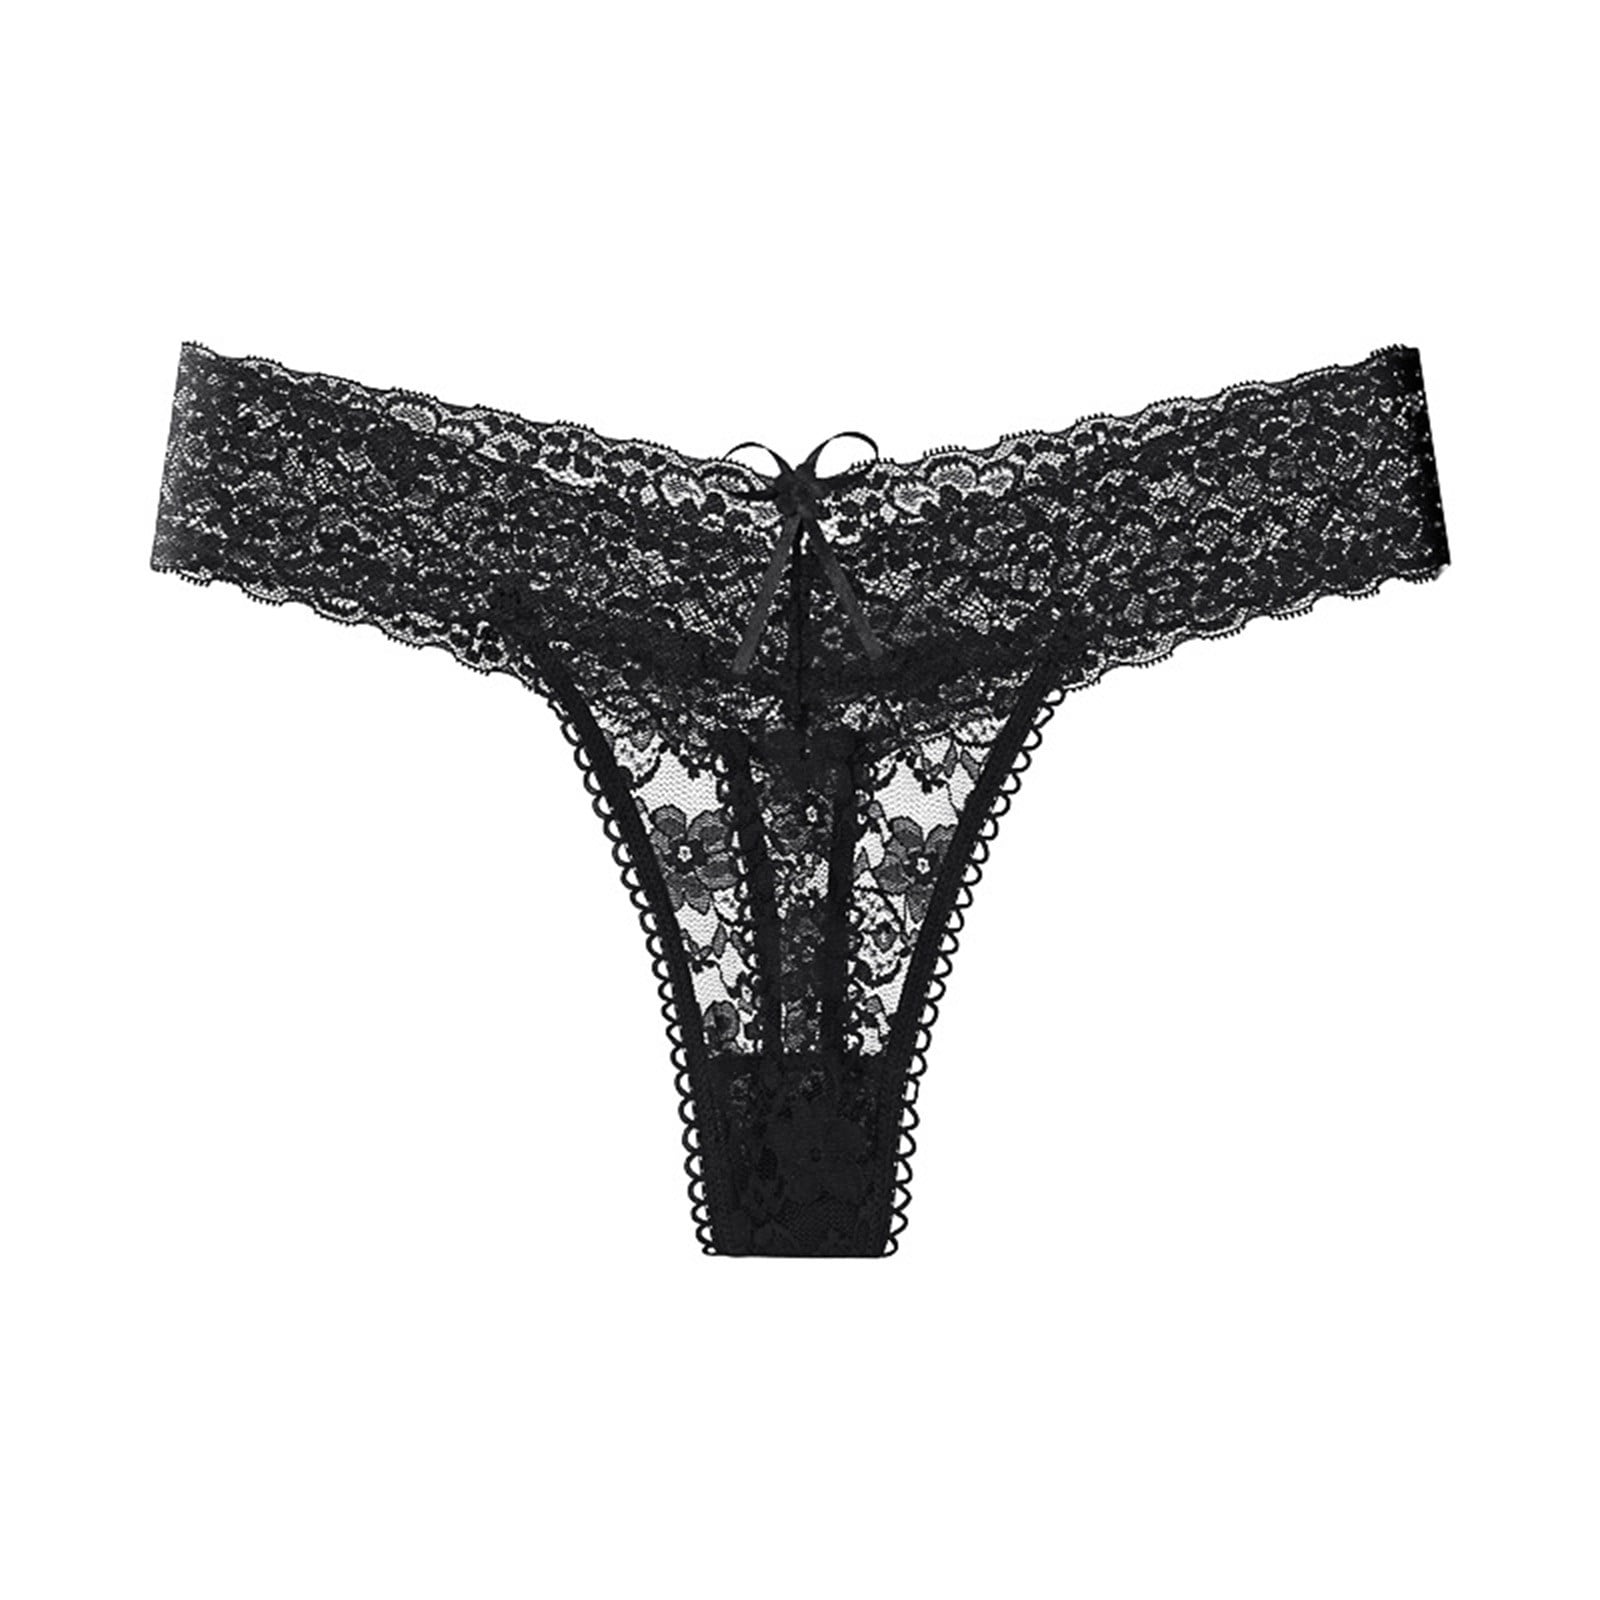 zuwimk Panties For Women Thong,Women's Classic Cotton Lace Trim Thong  Black,L 